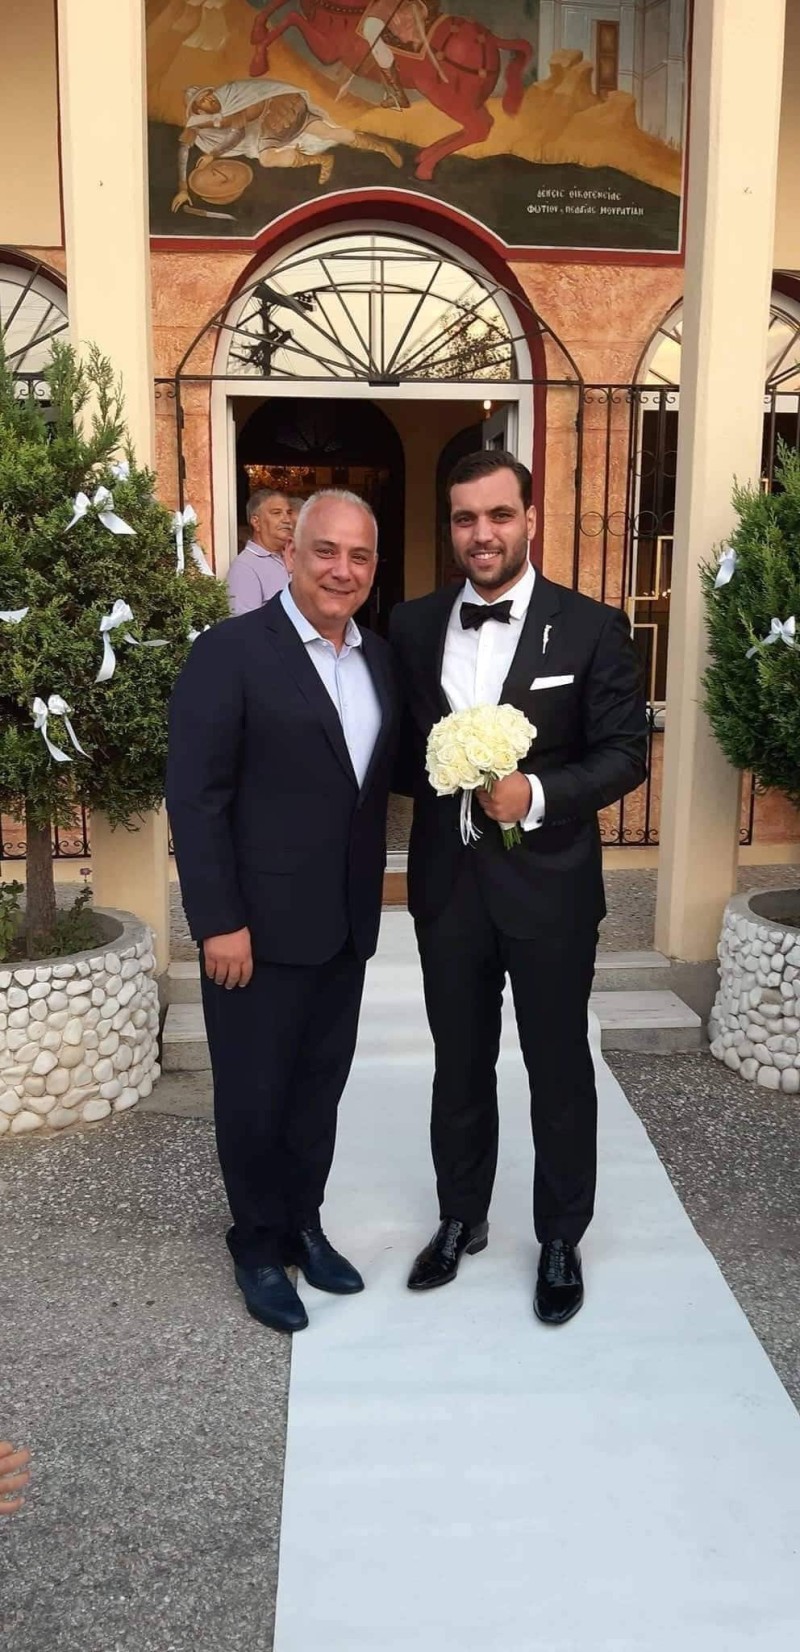 Γάμος βόμβα! Έλληνας πολιτικός παντρεύτηκε την σωματοφύλακά του!